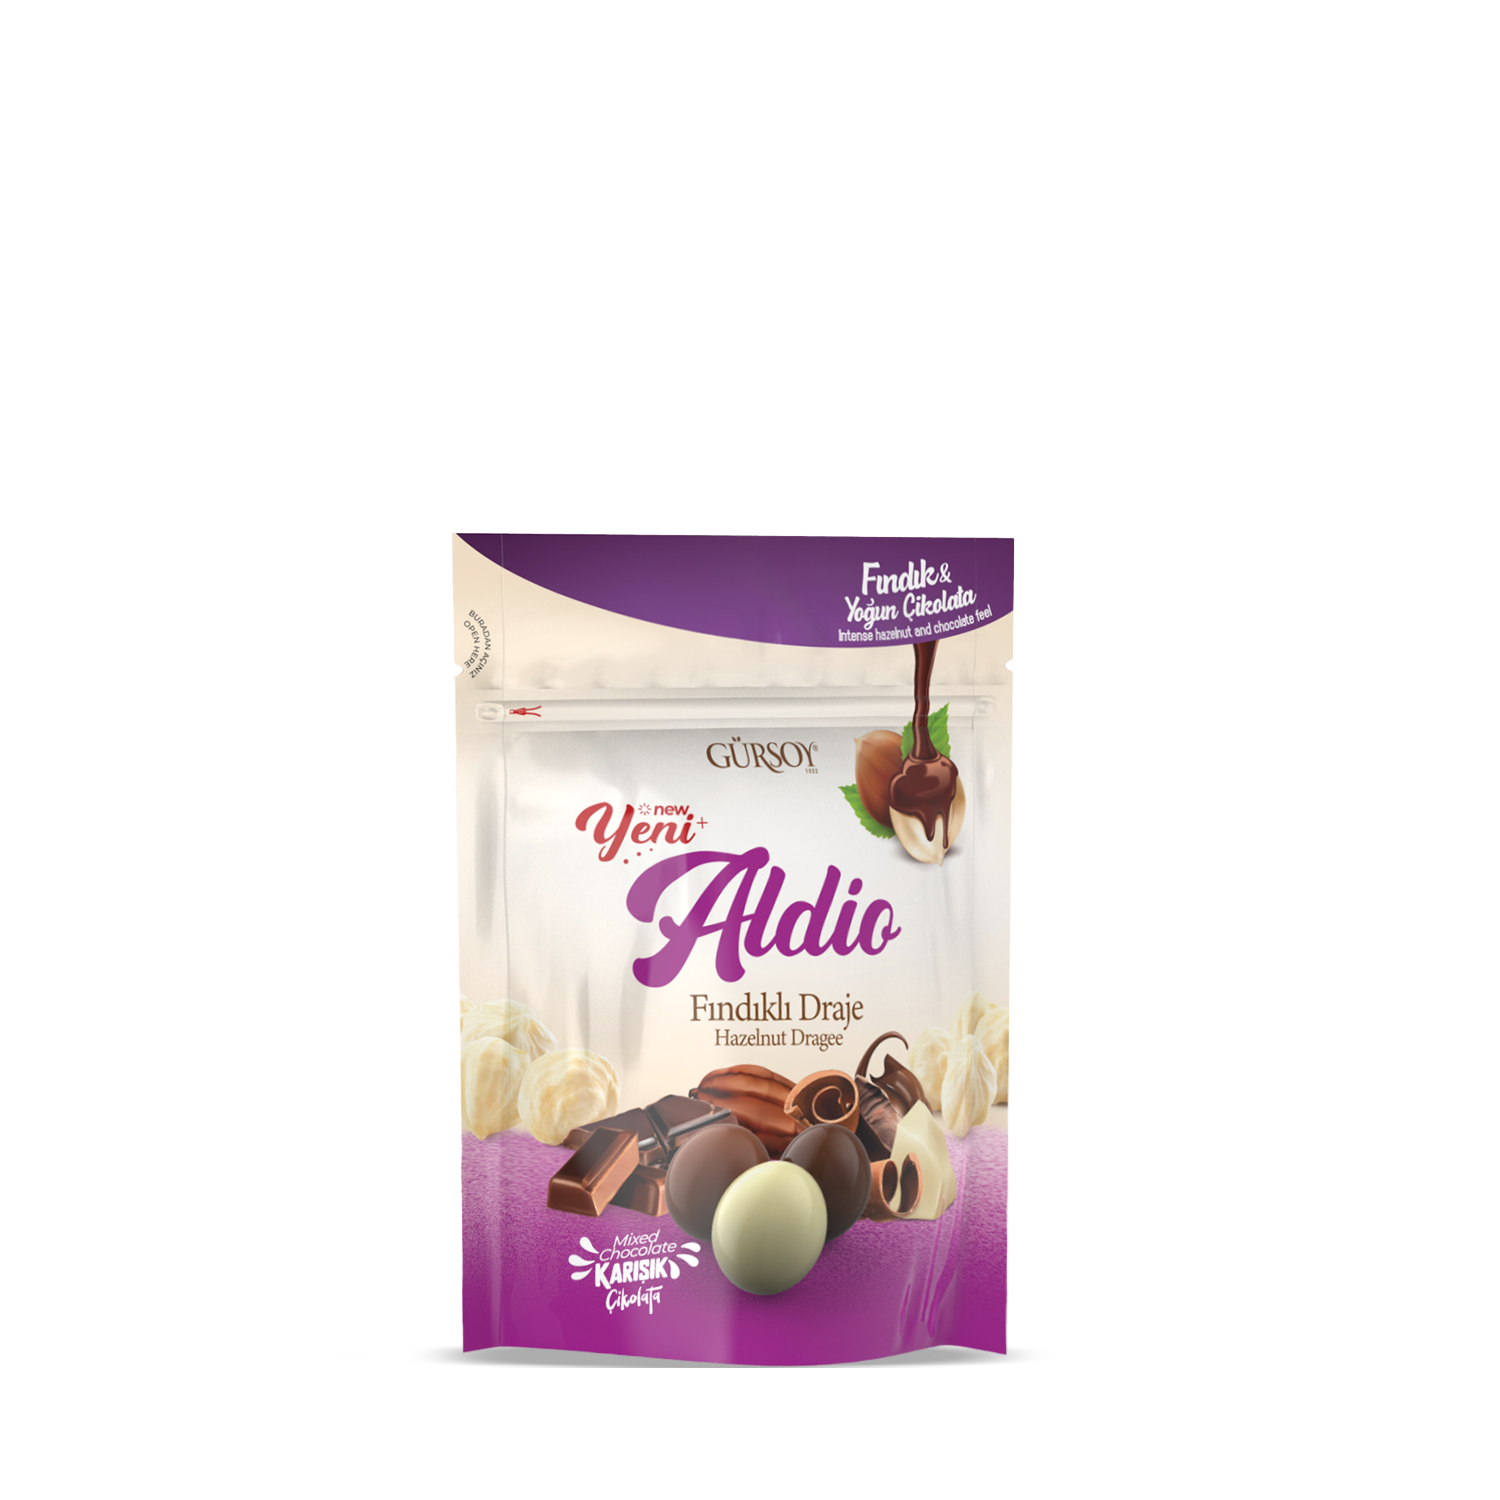 Aldio Karışık Çikolatalı Fındıklı Draje 180g